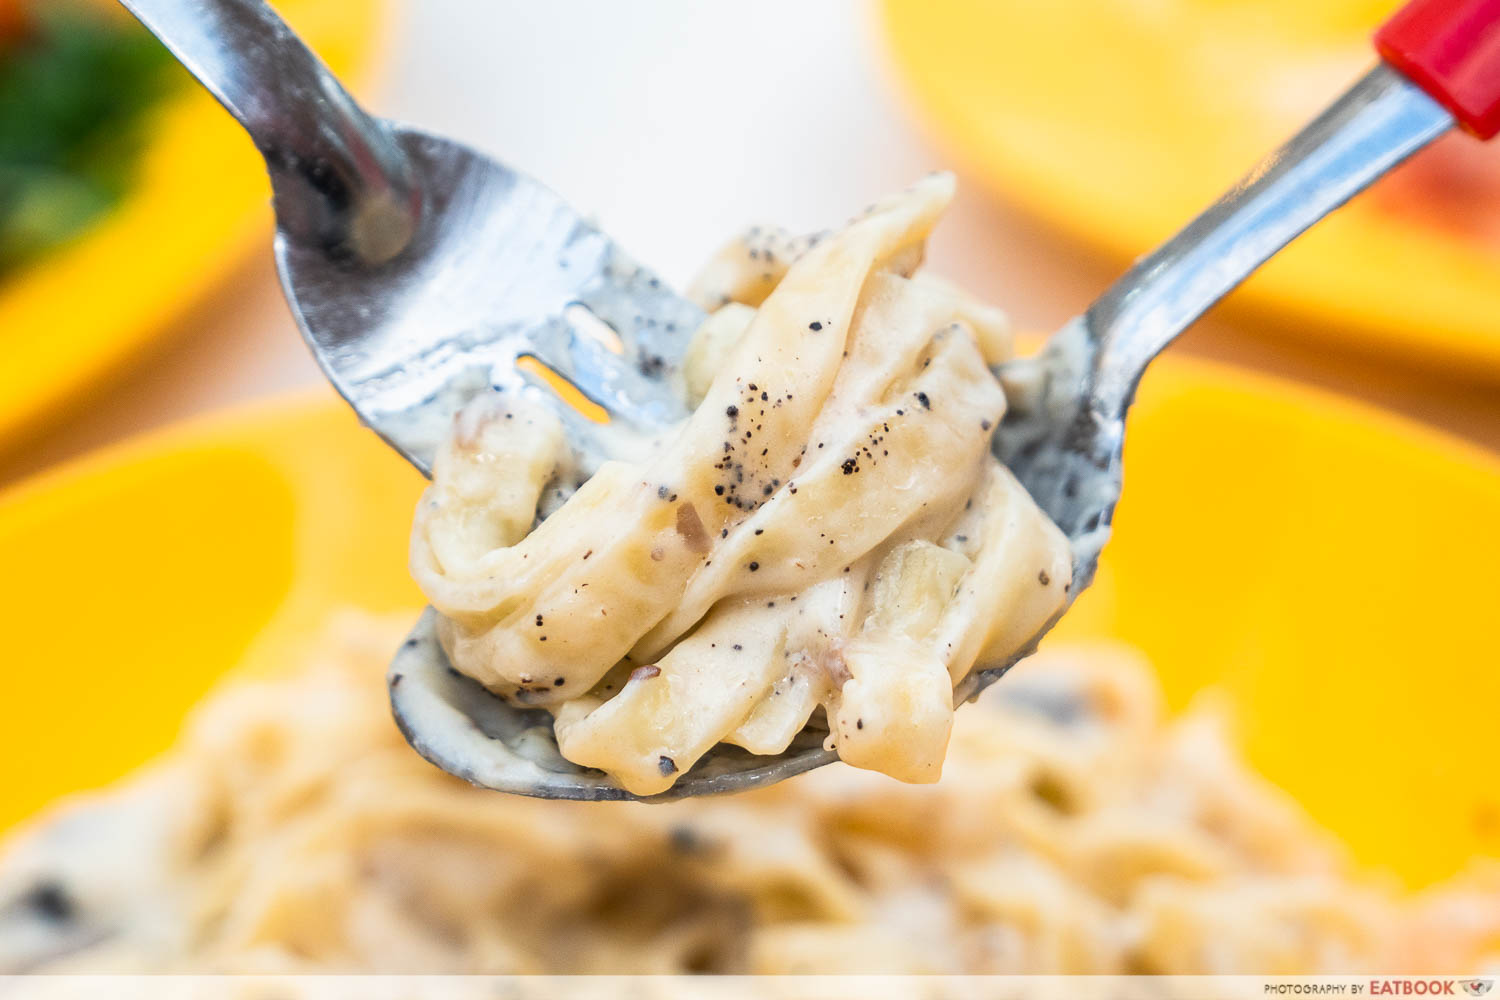 saporita truffle cheesewheel pasta interaction shot